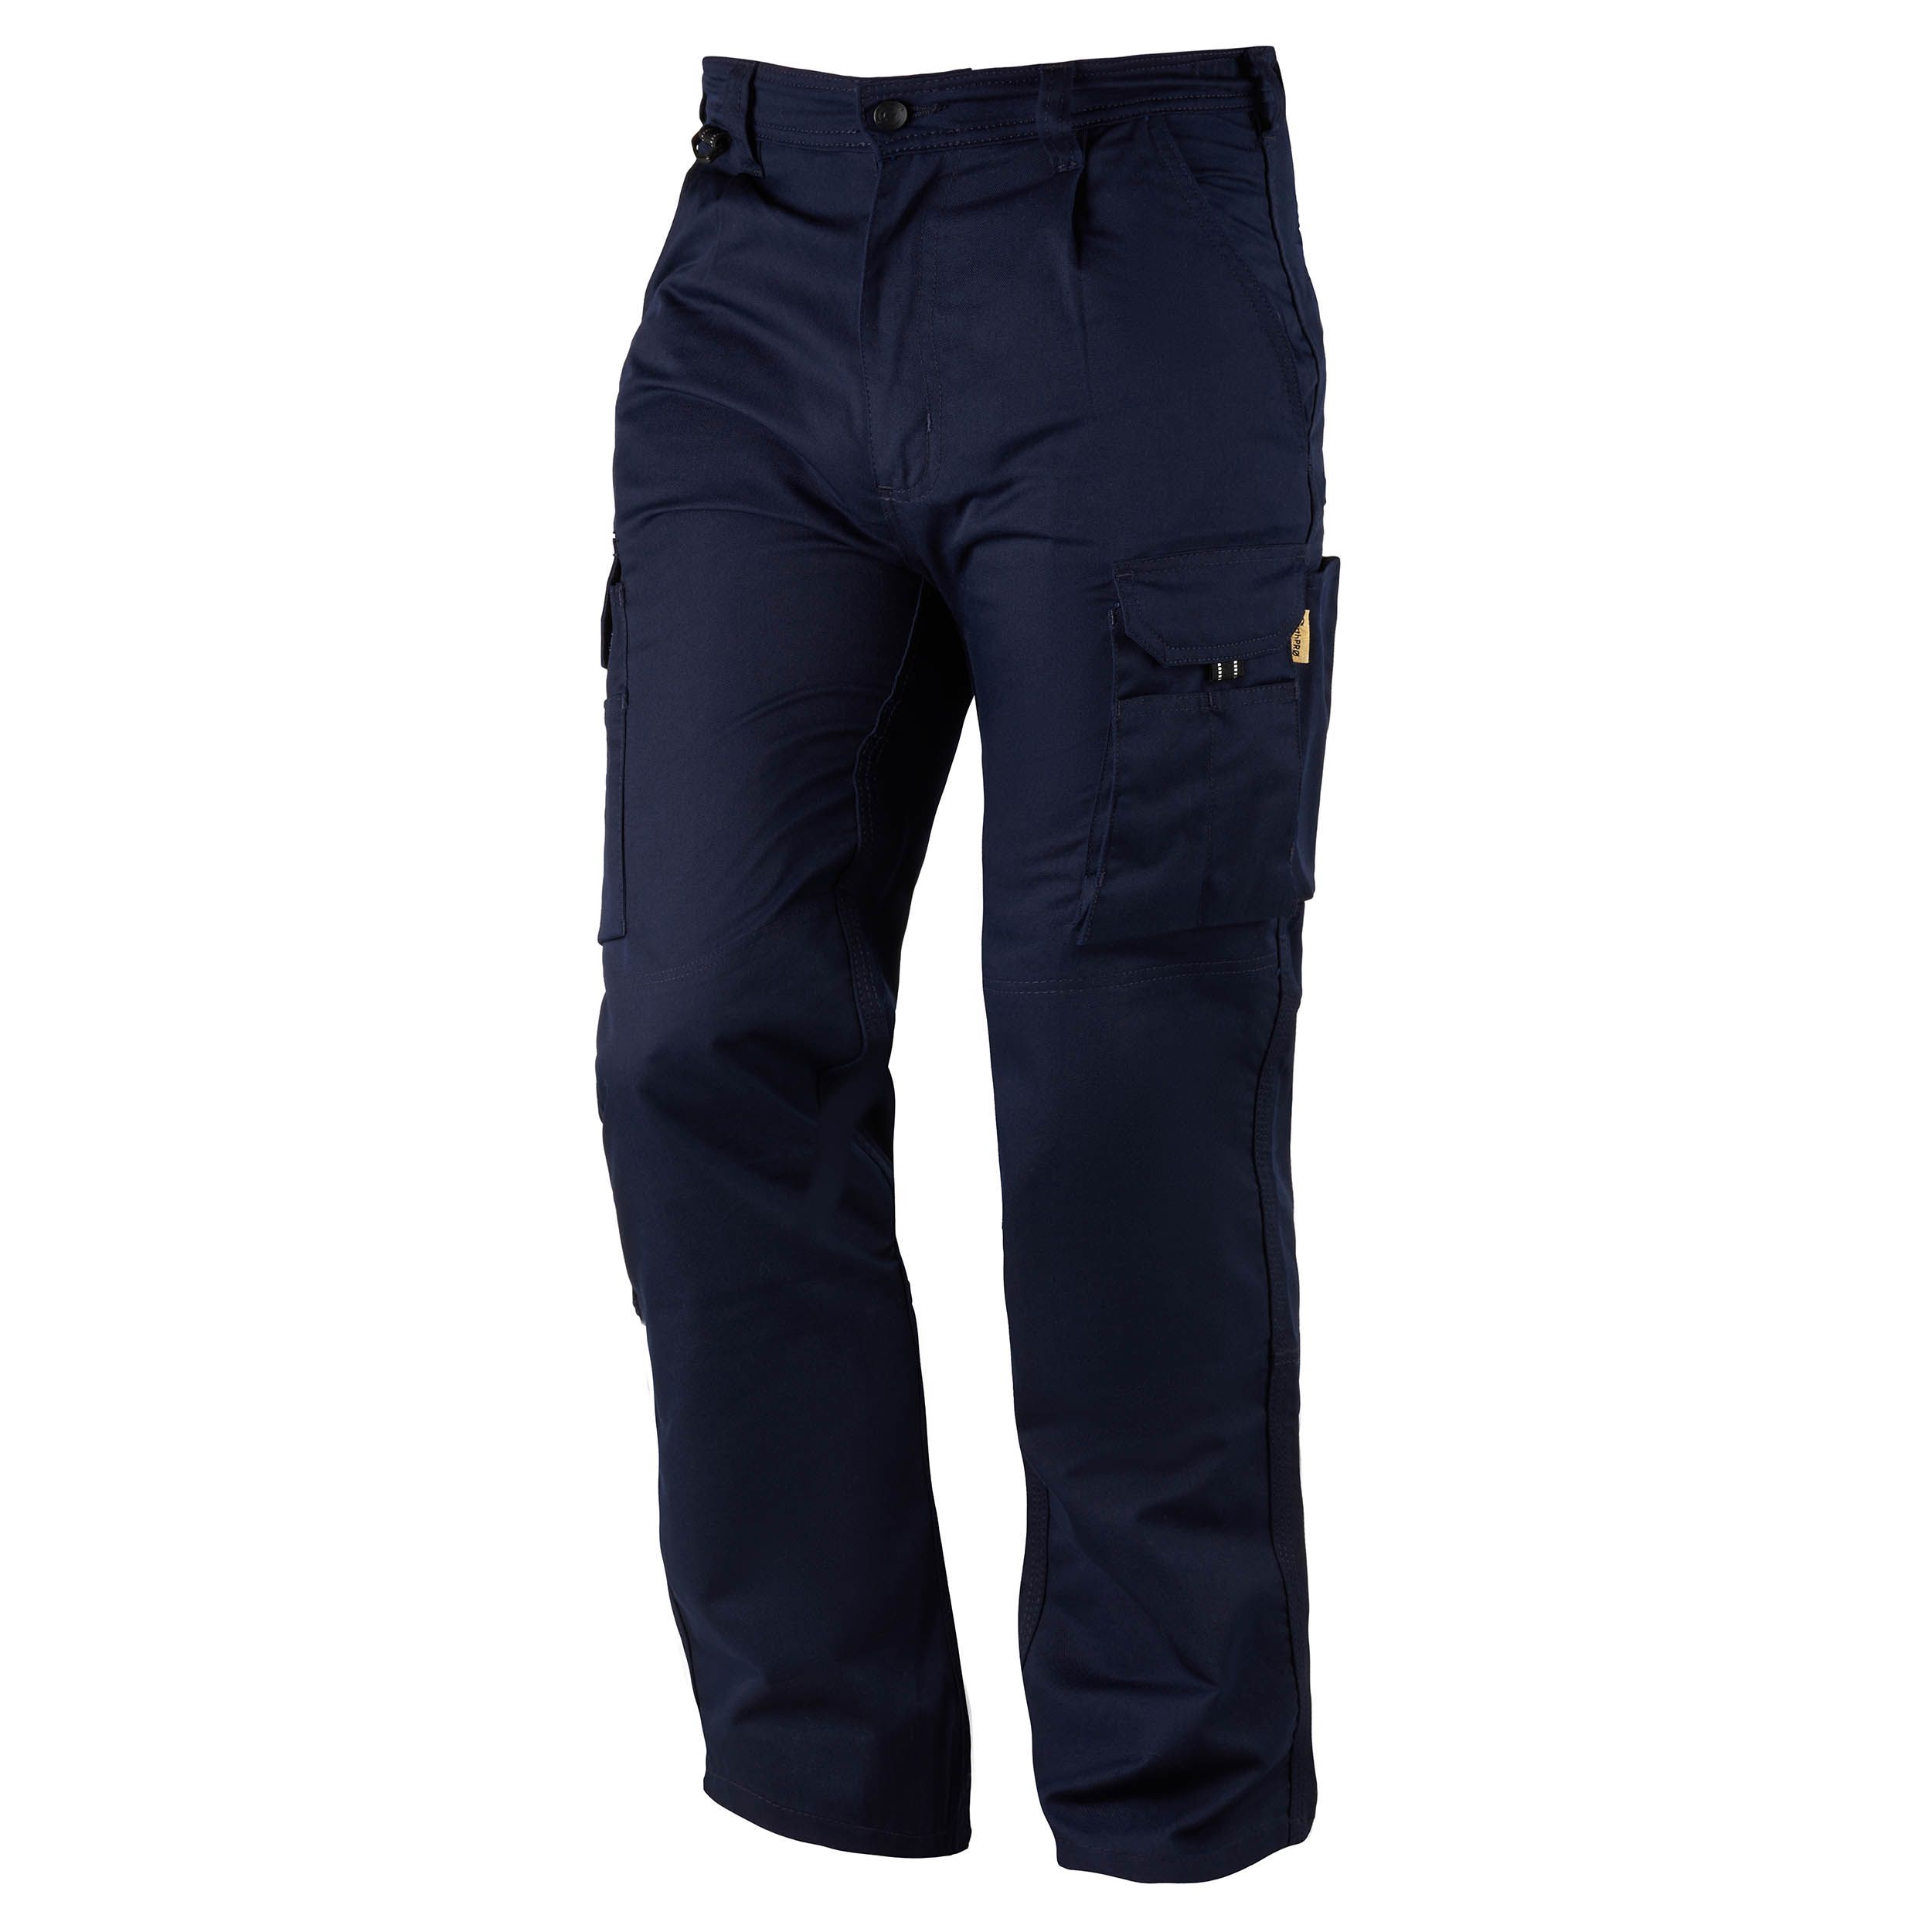 Pantalon de travail Orn Hawk EarthPro Combat Trouser, 79cm Homme, Bleu marine en Coton, polyester recyclé